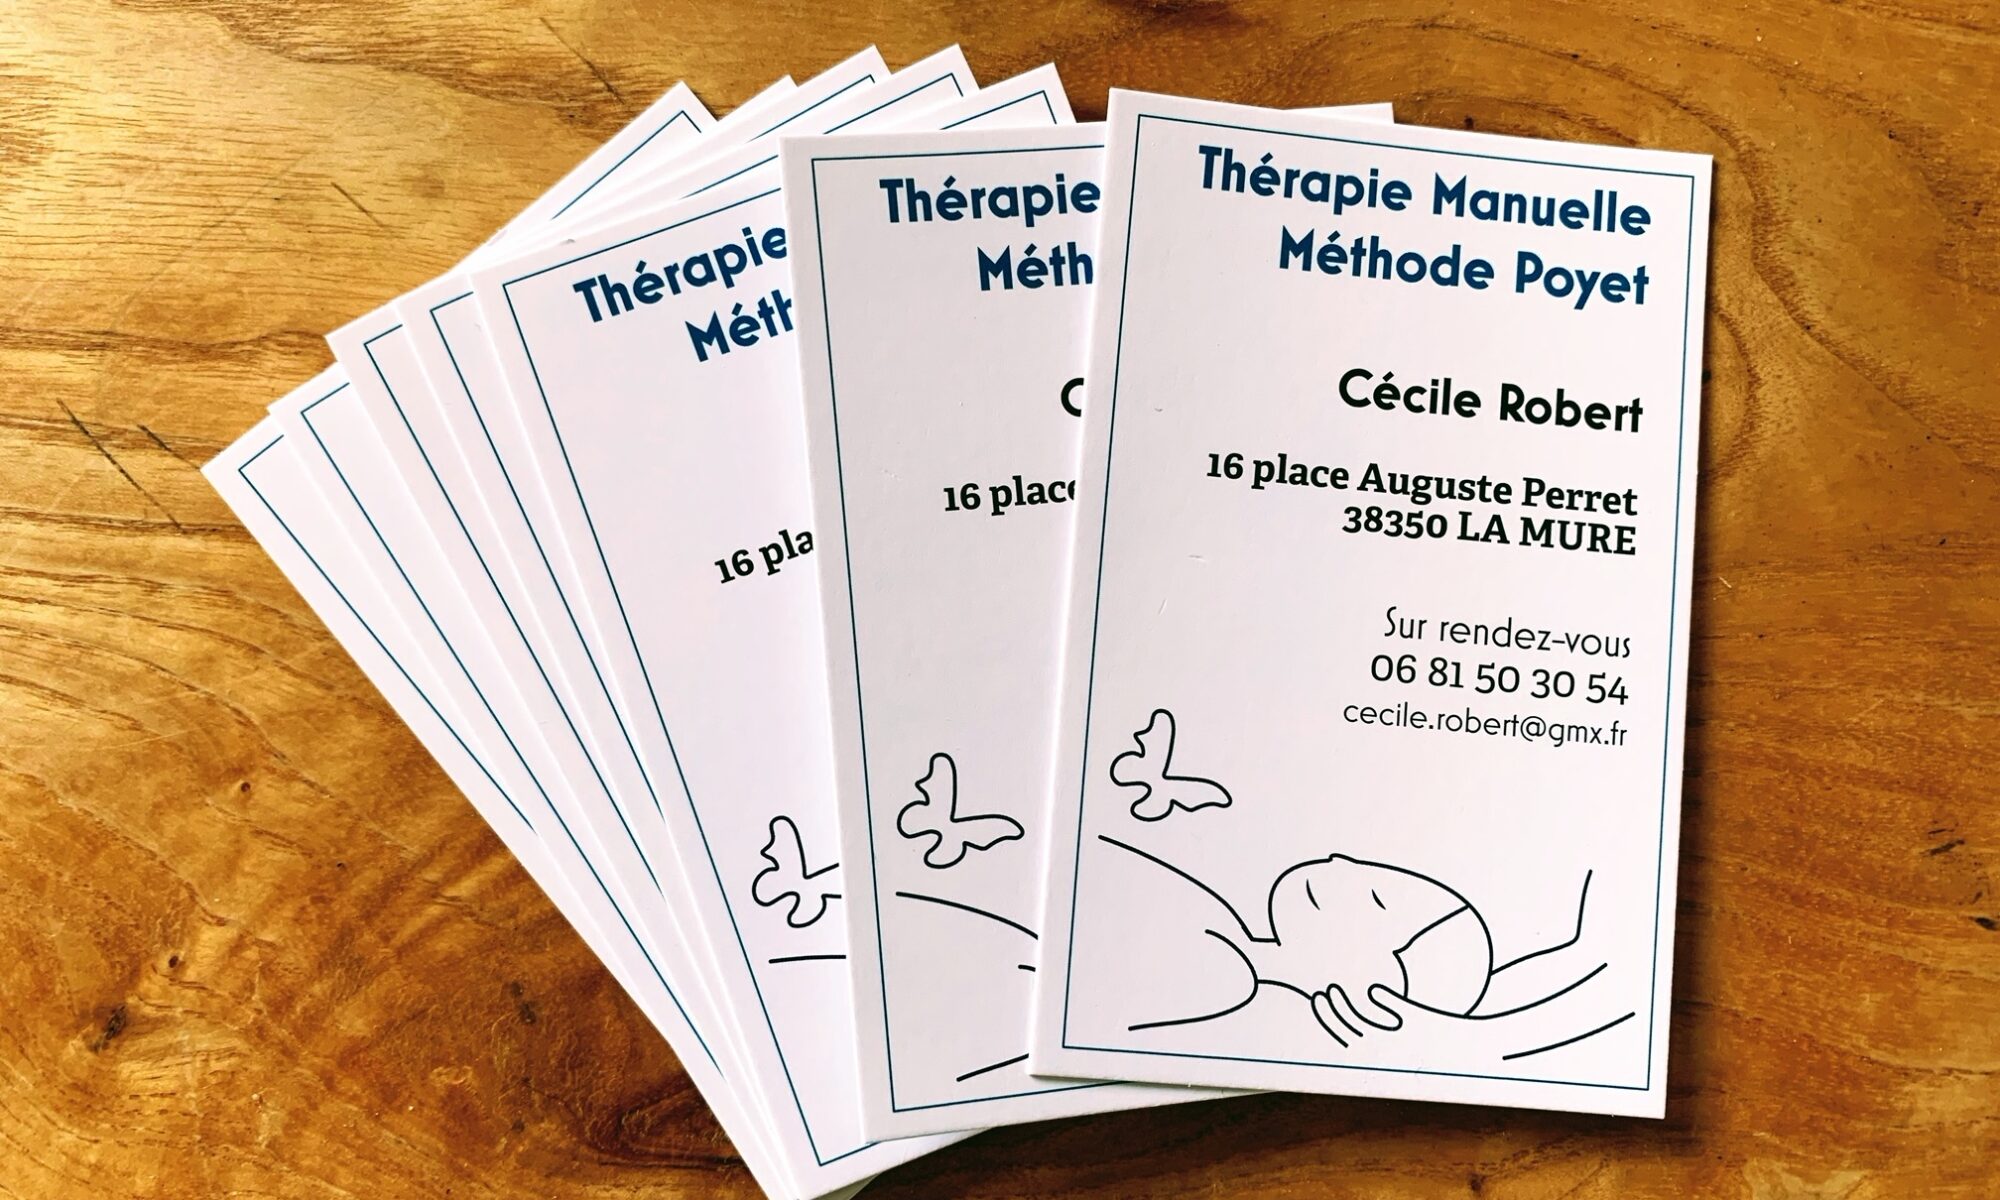 cartes de visite pour Cécile Robert, Osteo therapie energetique Methode Poyet et Somatopathie, à 38350 La Mure.